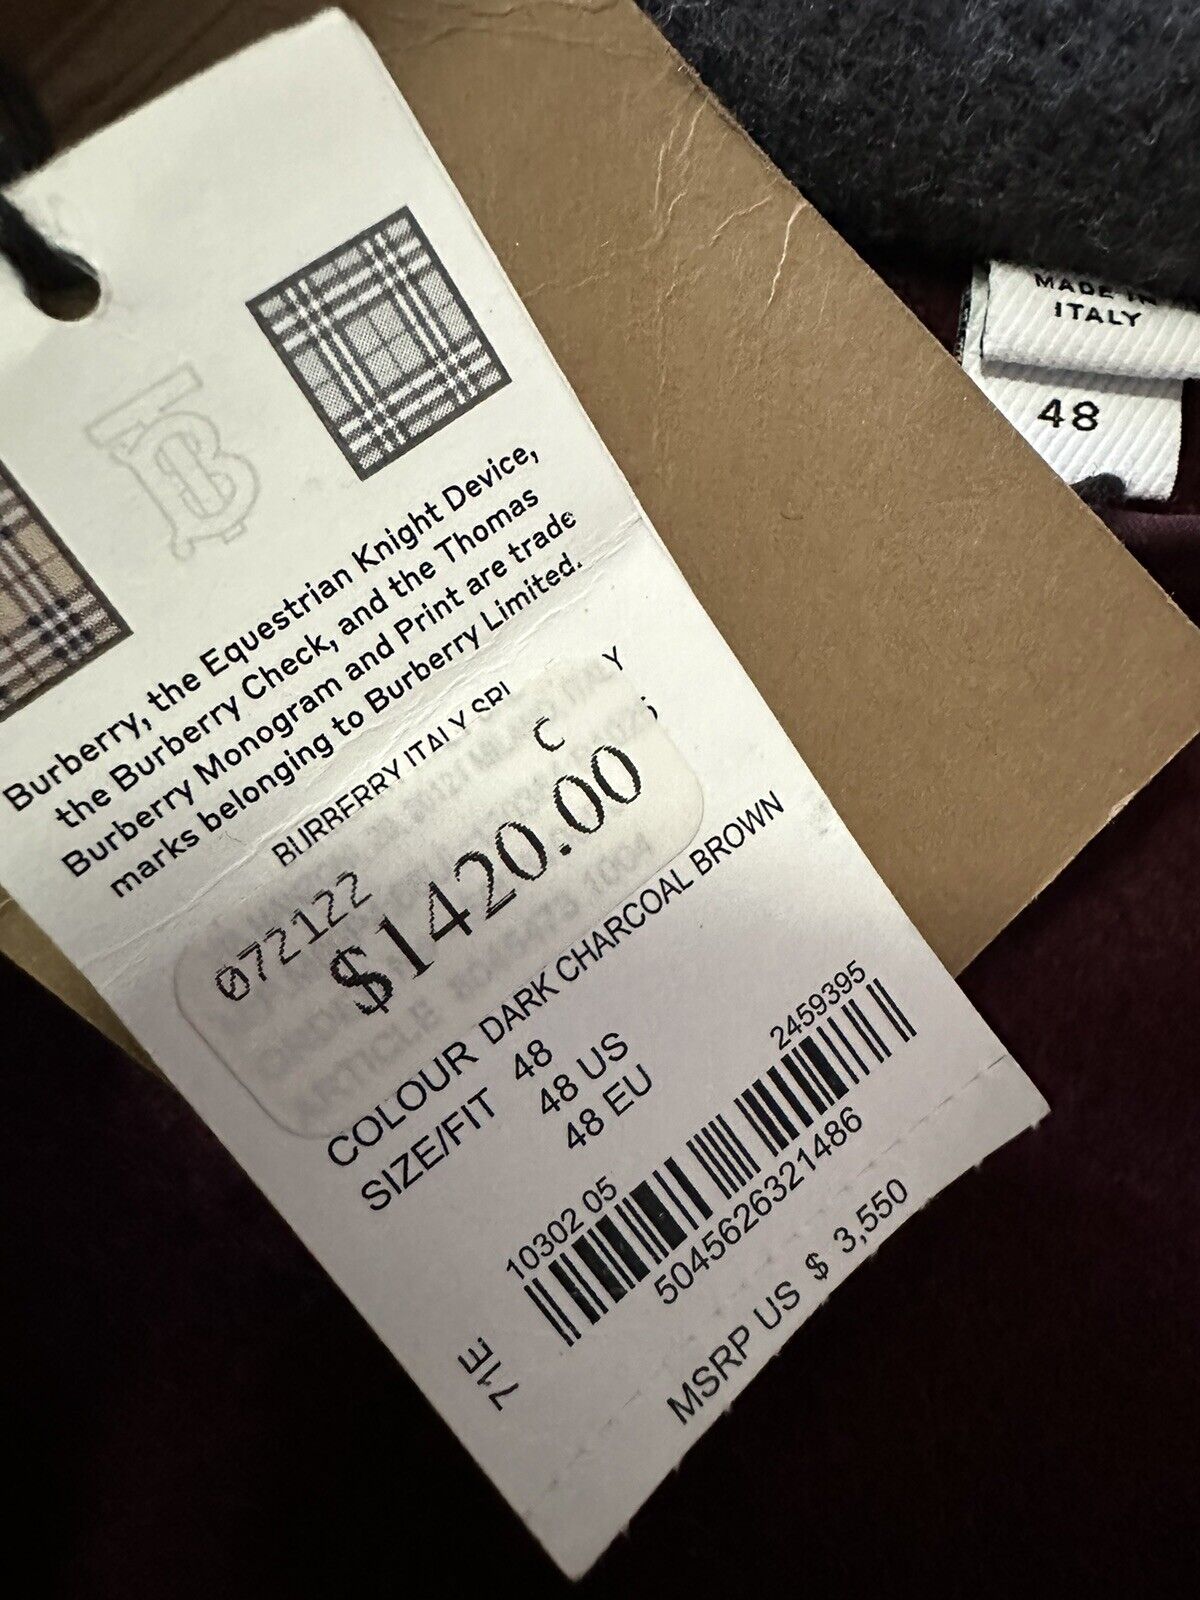 Neuer, übergroßer Woll-Kapuzenmantel von Burberry für 3.550 $, DUNKELCHARCOAL, 38 US/48 Eu